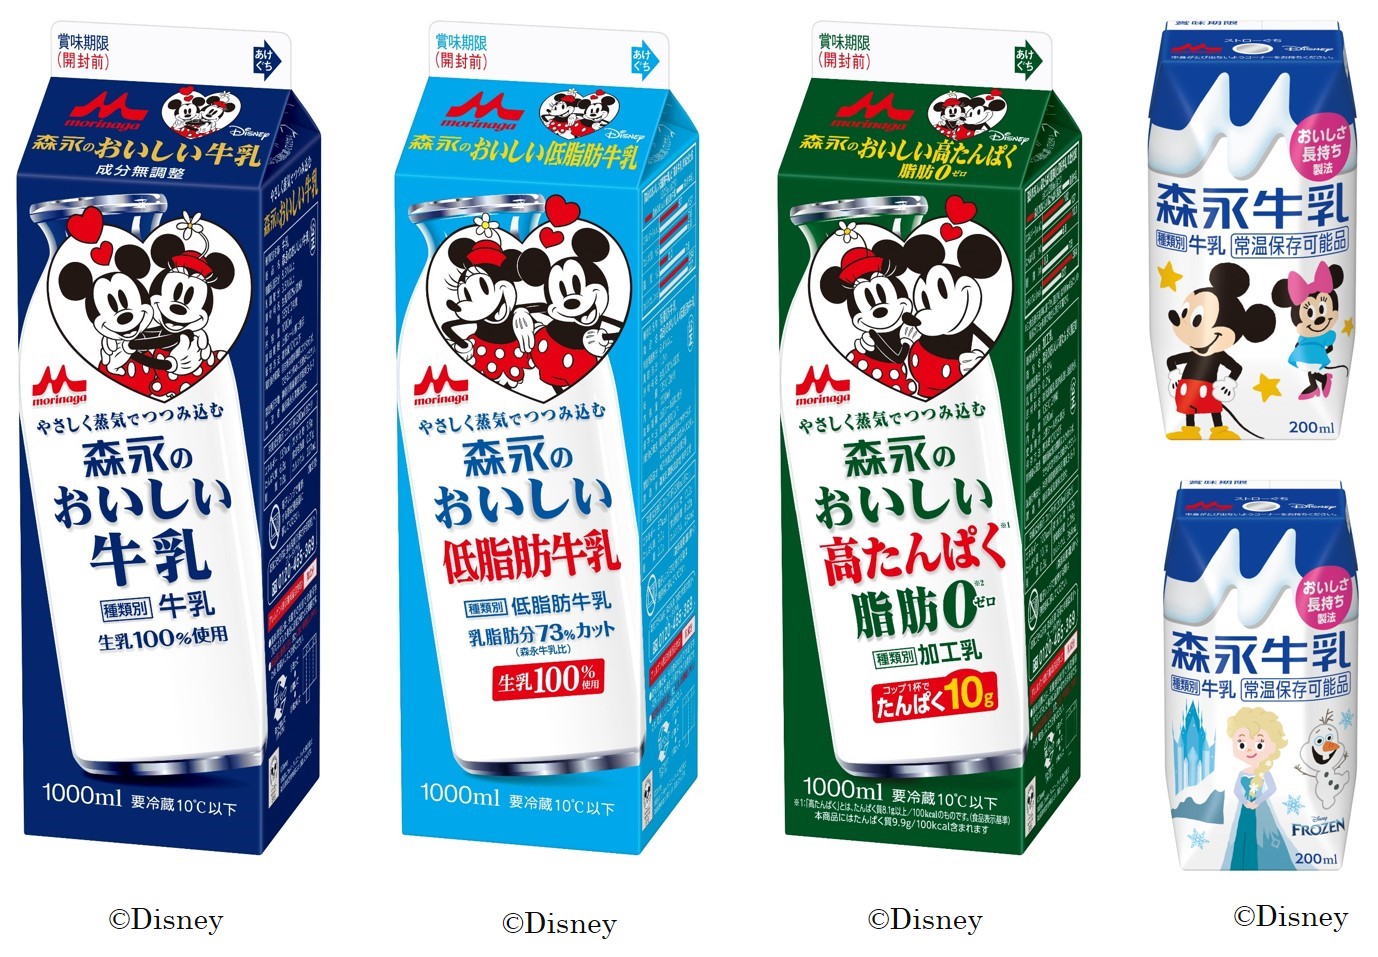 ディズニーのキャラクターが森永乳業の牛乳のパッケージに登場 森永のおいしい牛乳 シリーズ 森永牛乳0ml ディズニー デザインパッケージ 森永乳業株式会社のプレスリリース